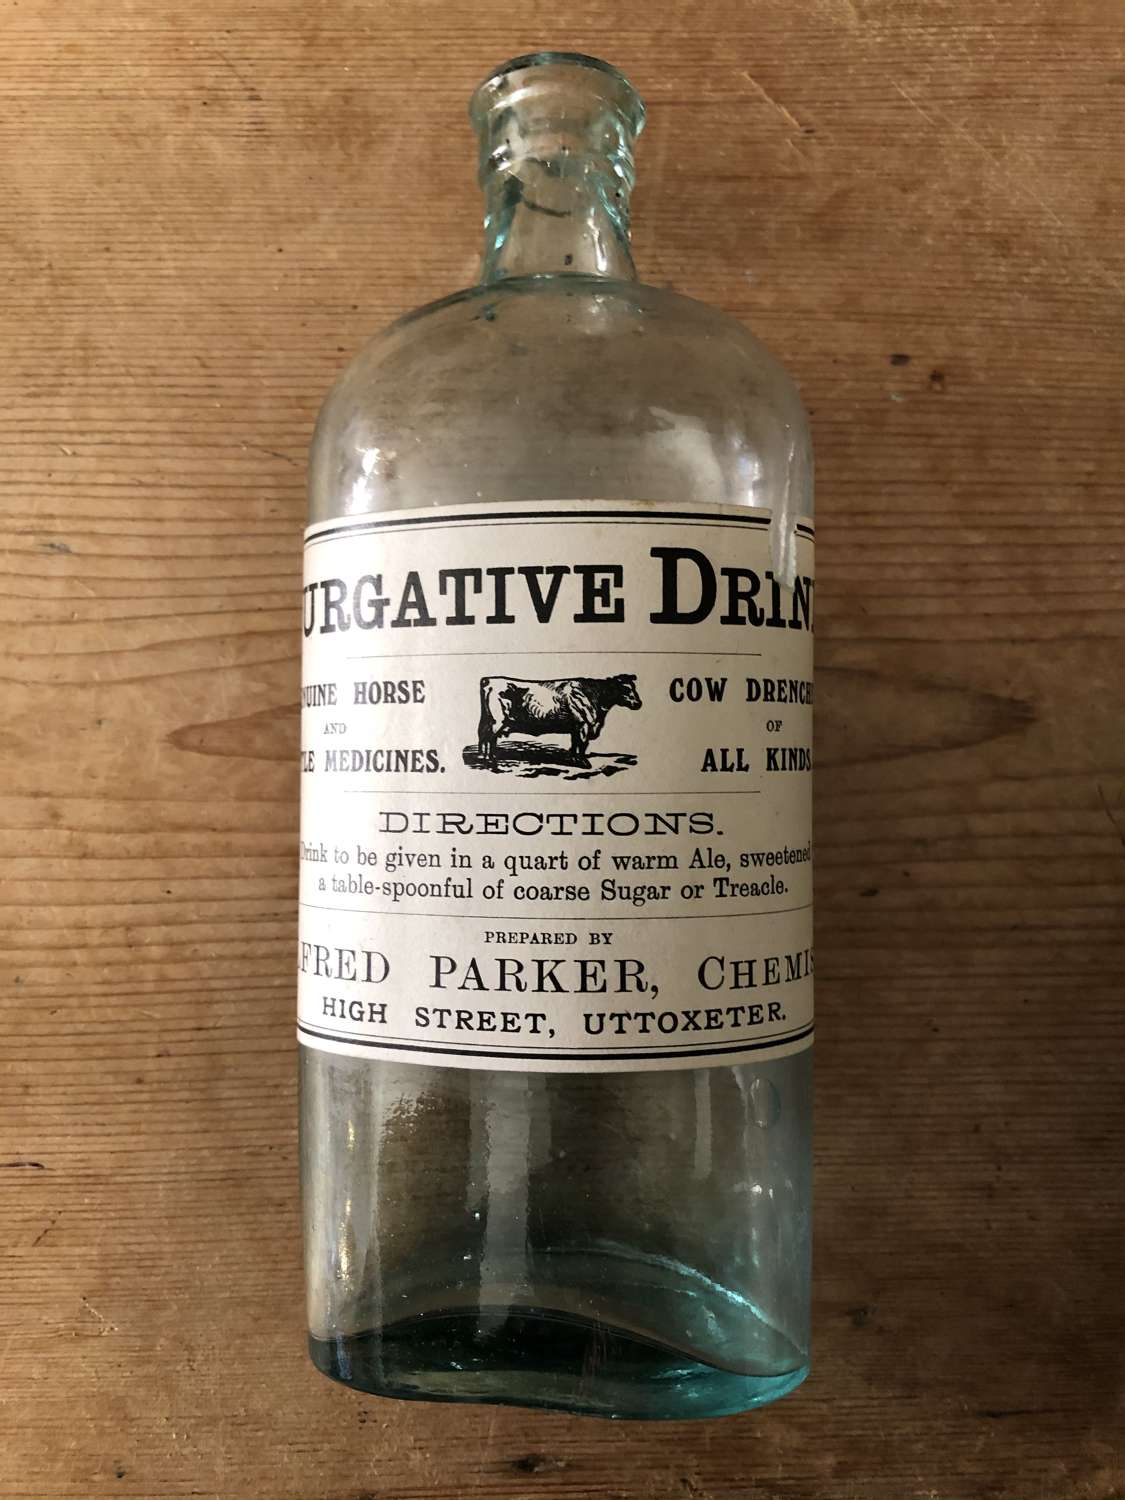 Purgitive Drink Bottle